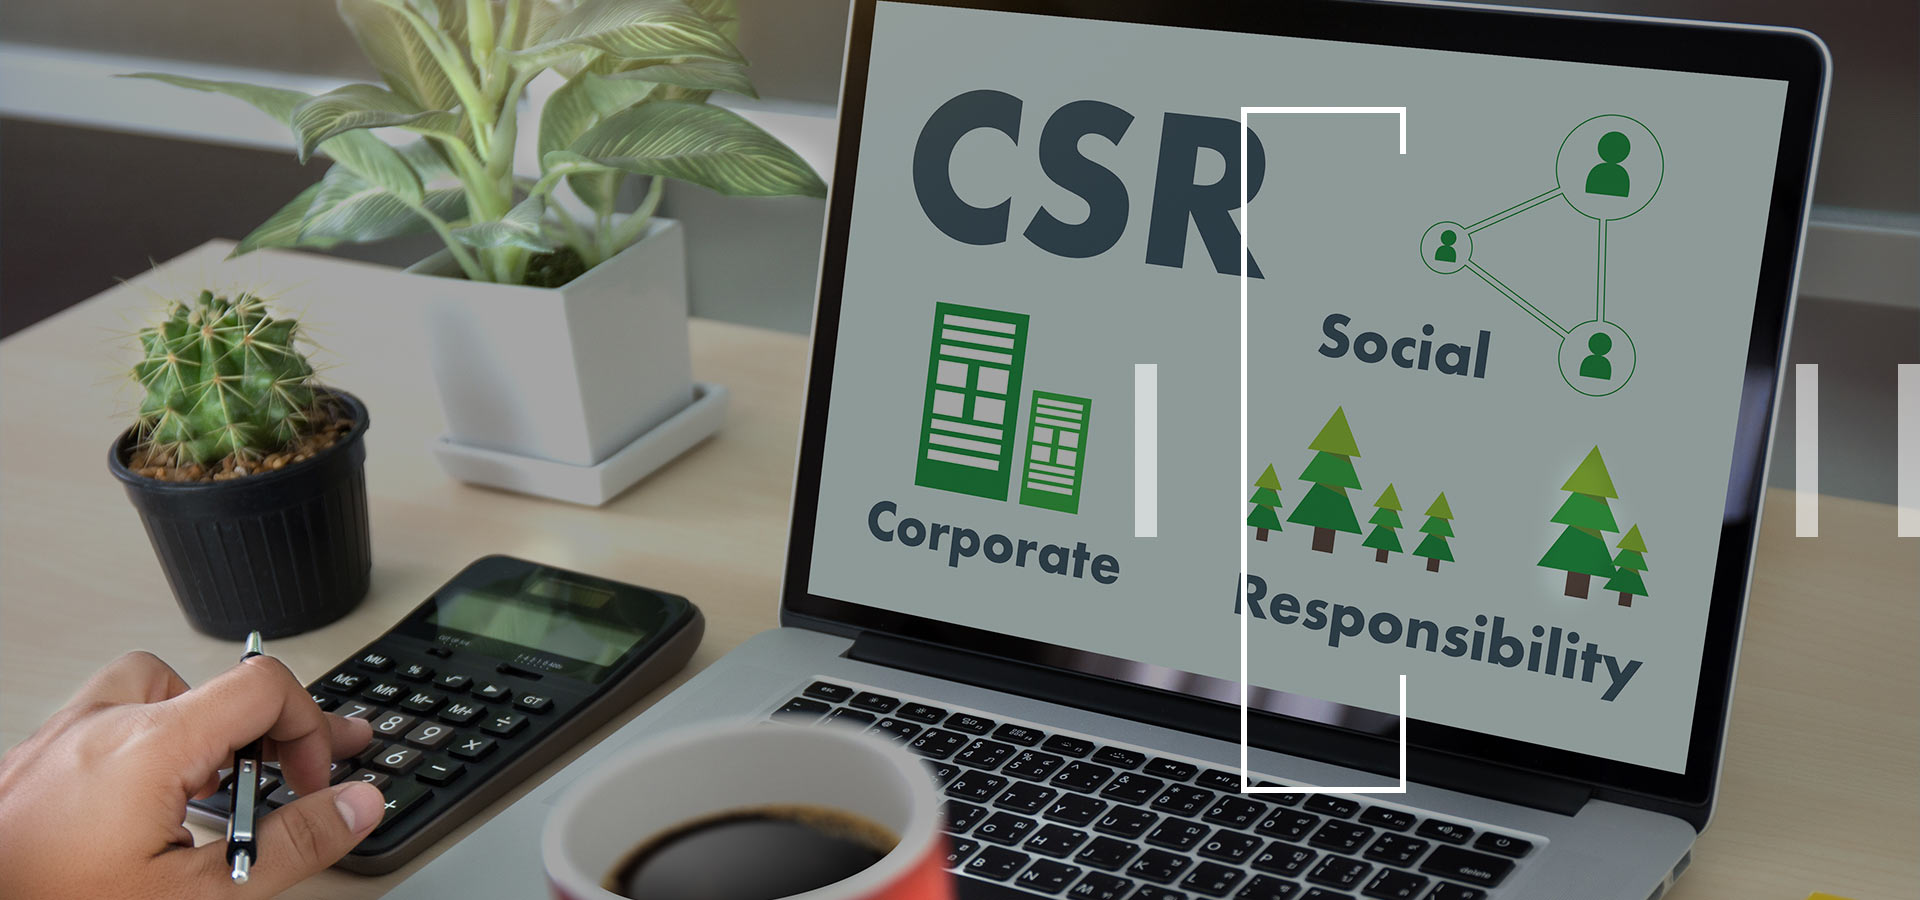 区块链能否解决印度企业社会责任(CSR)的挑战?